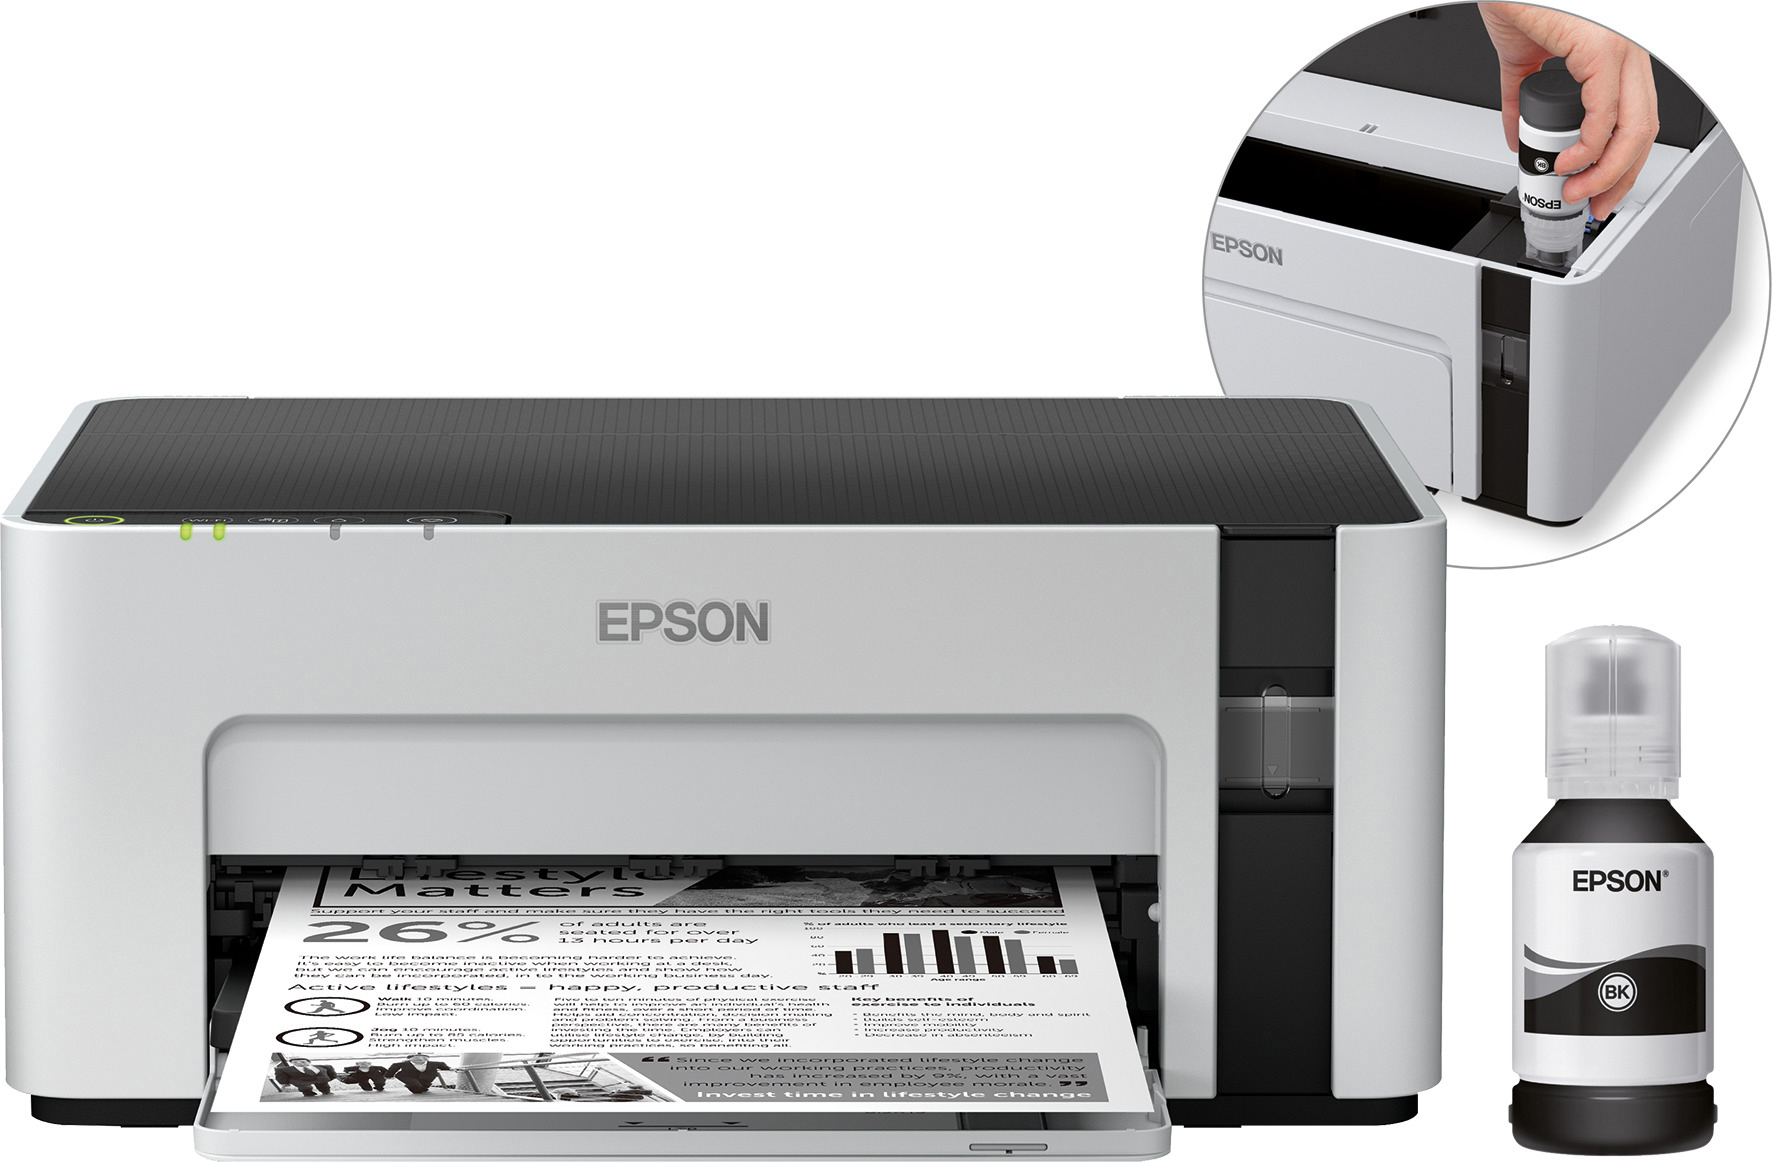 Tintenstrahldrucker Von Epson Jetzt Bestellen Mediamarkt